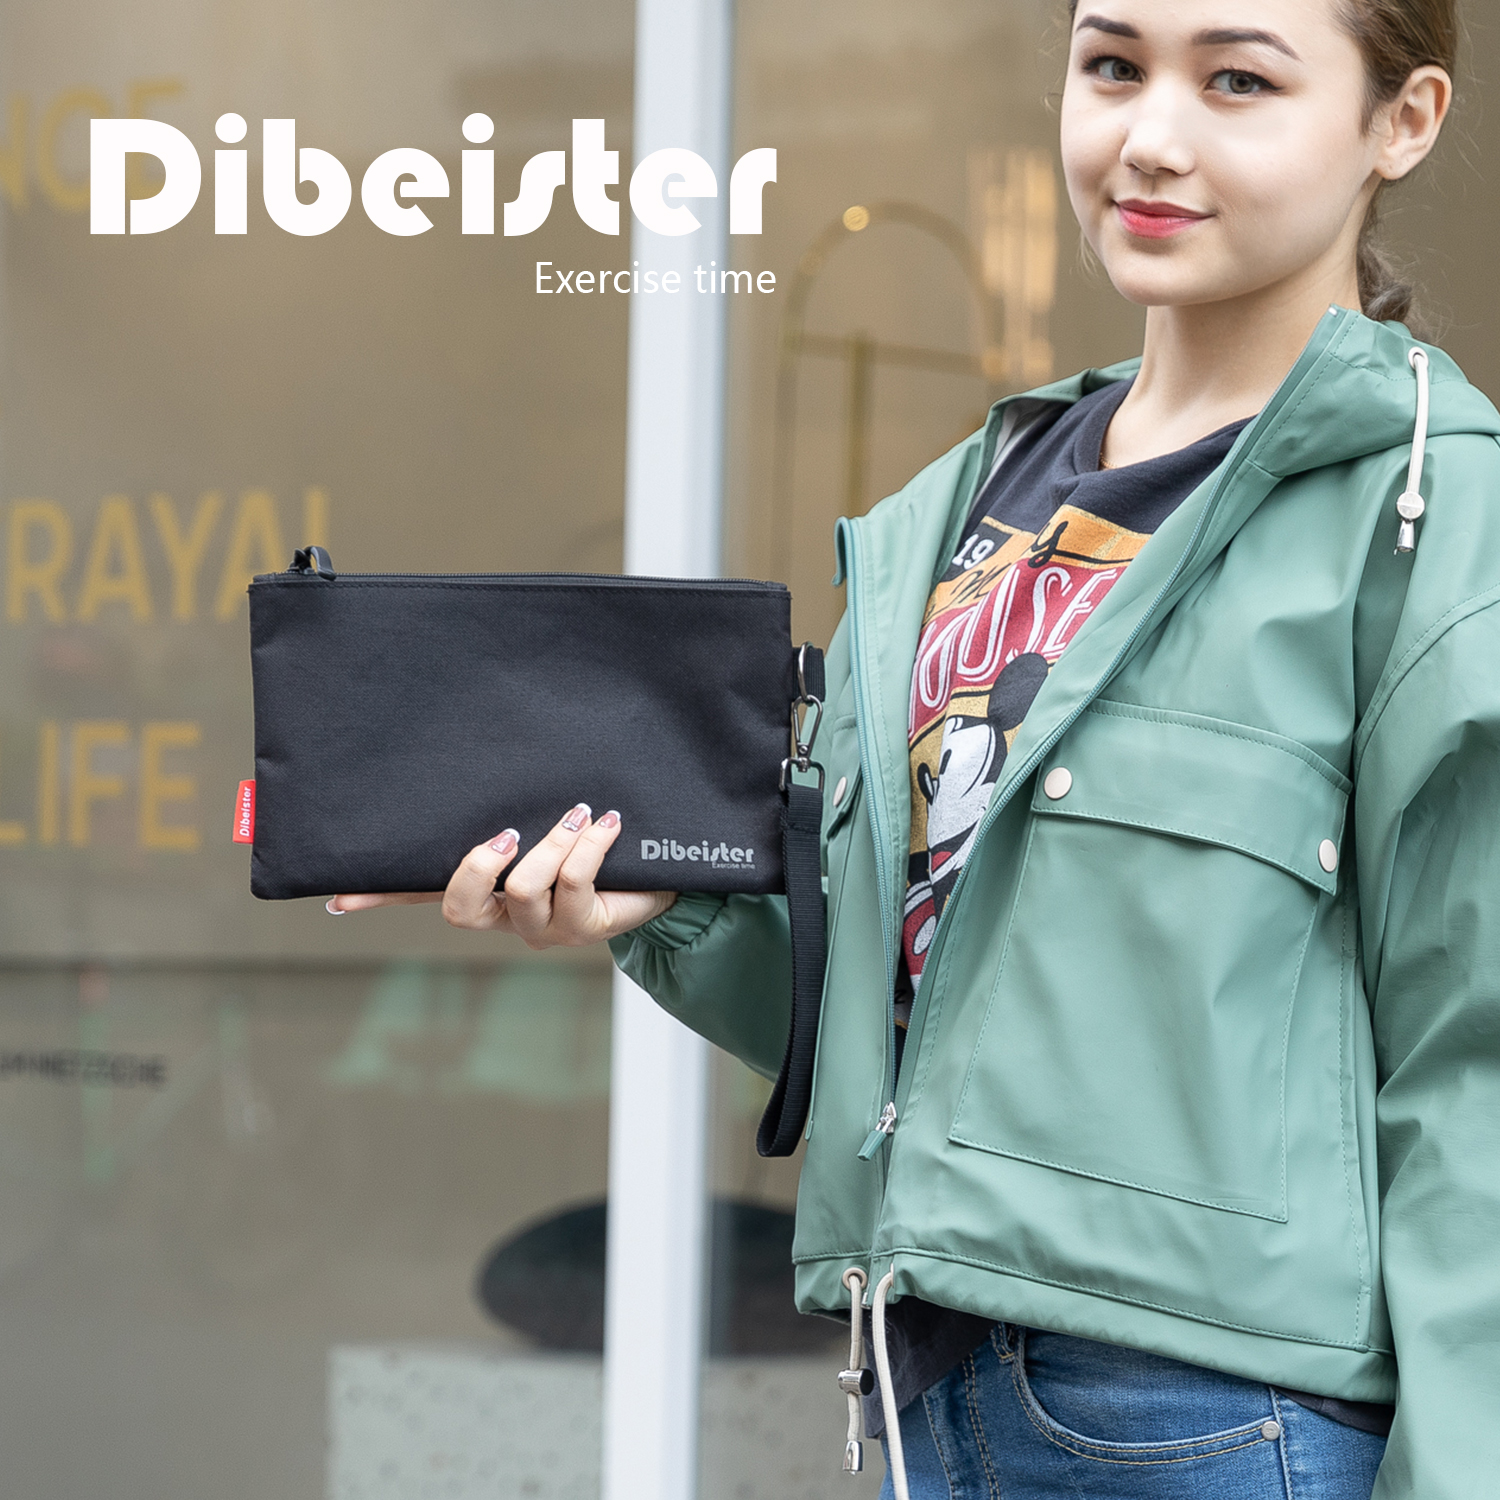 Dibeister户外运动便携轻便收纳袋手机包手拿零钱包手腕包散步包